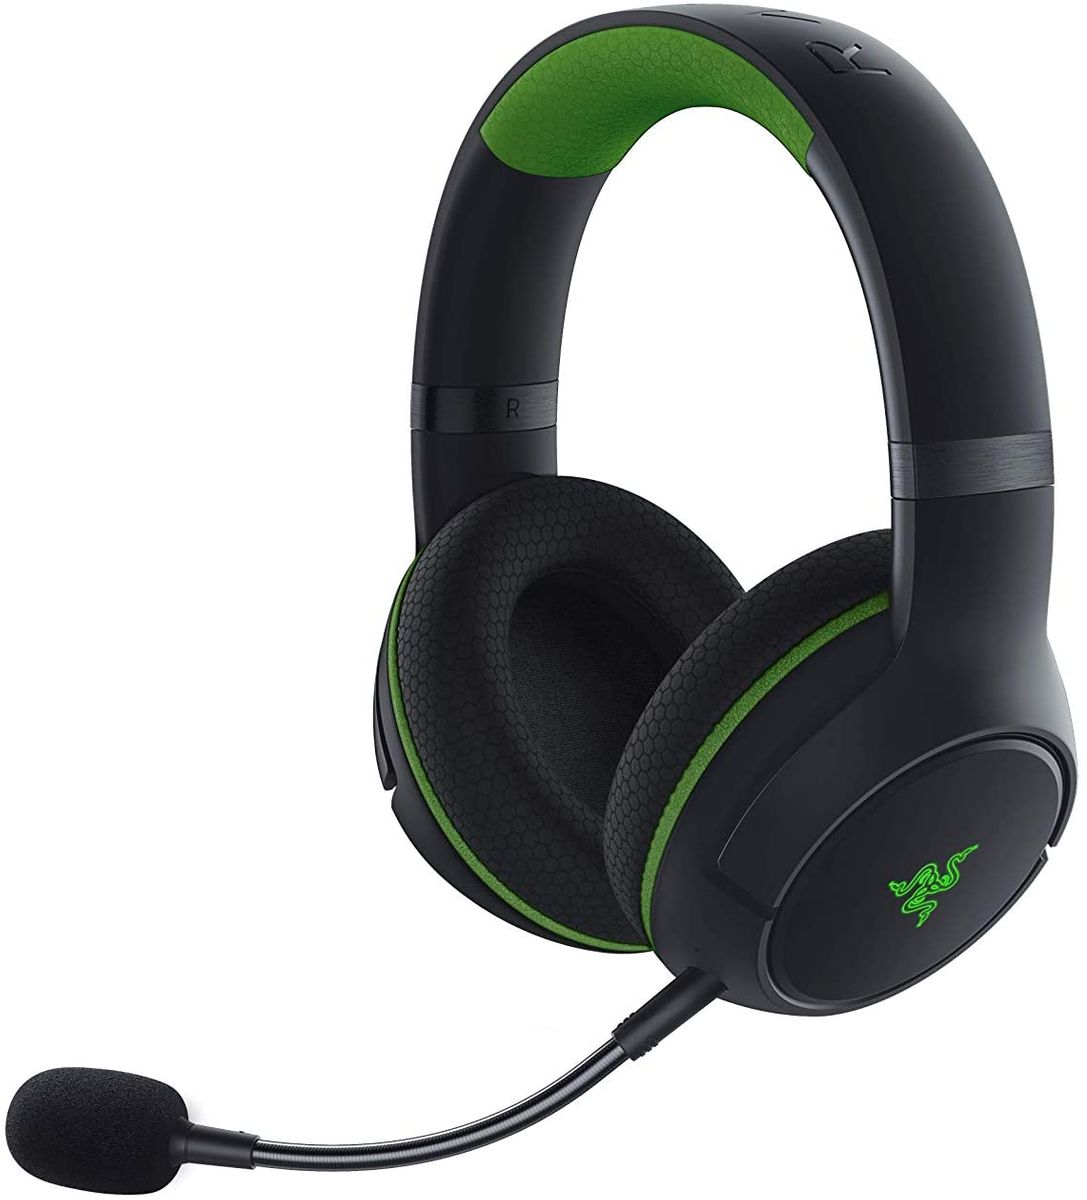 Razer Kaira Pro for Xbox Gaming Headset Wireless Stereo Chroma RGB Black/Green